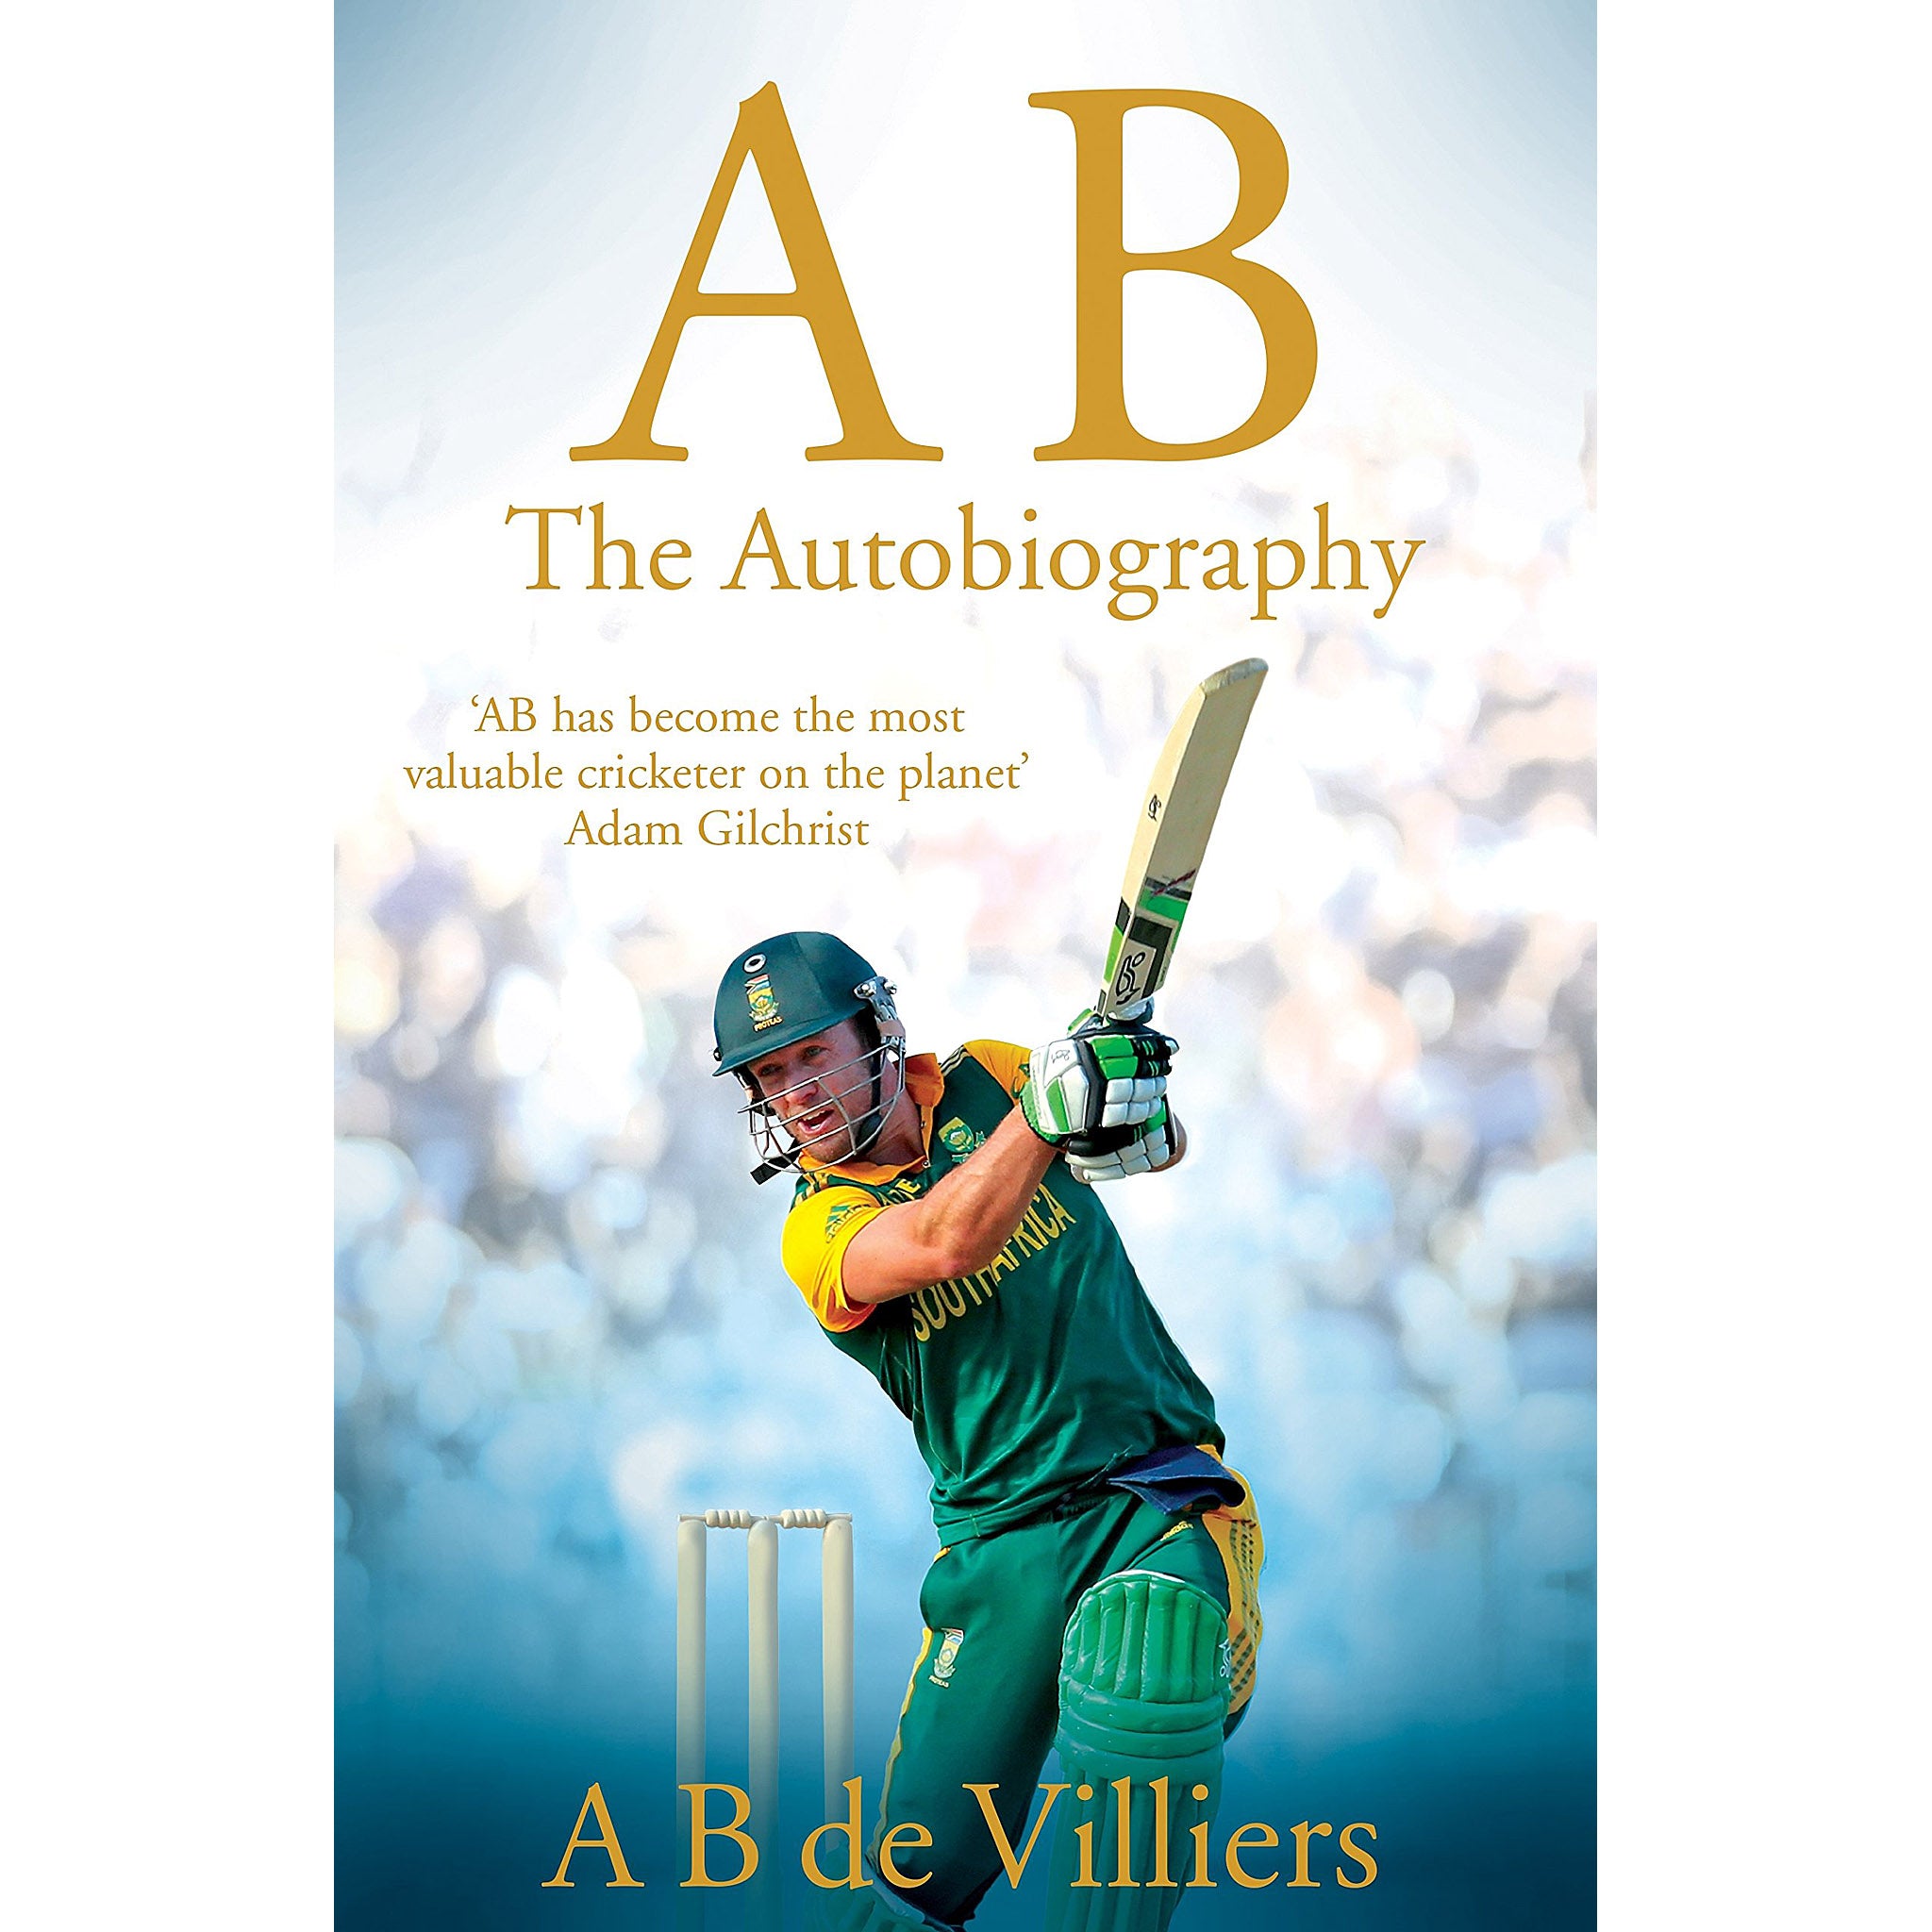 AB – The Autobiography of AB de Villiers